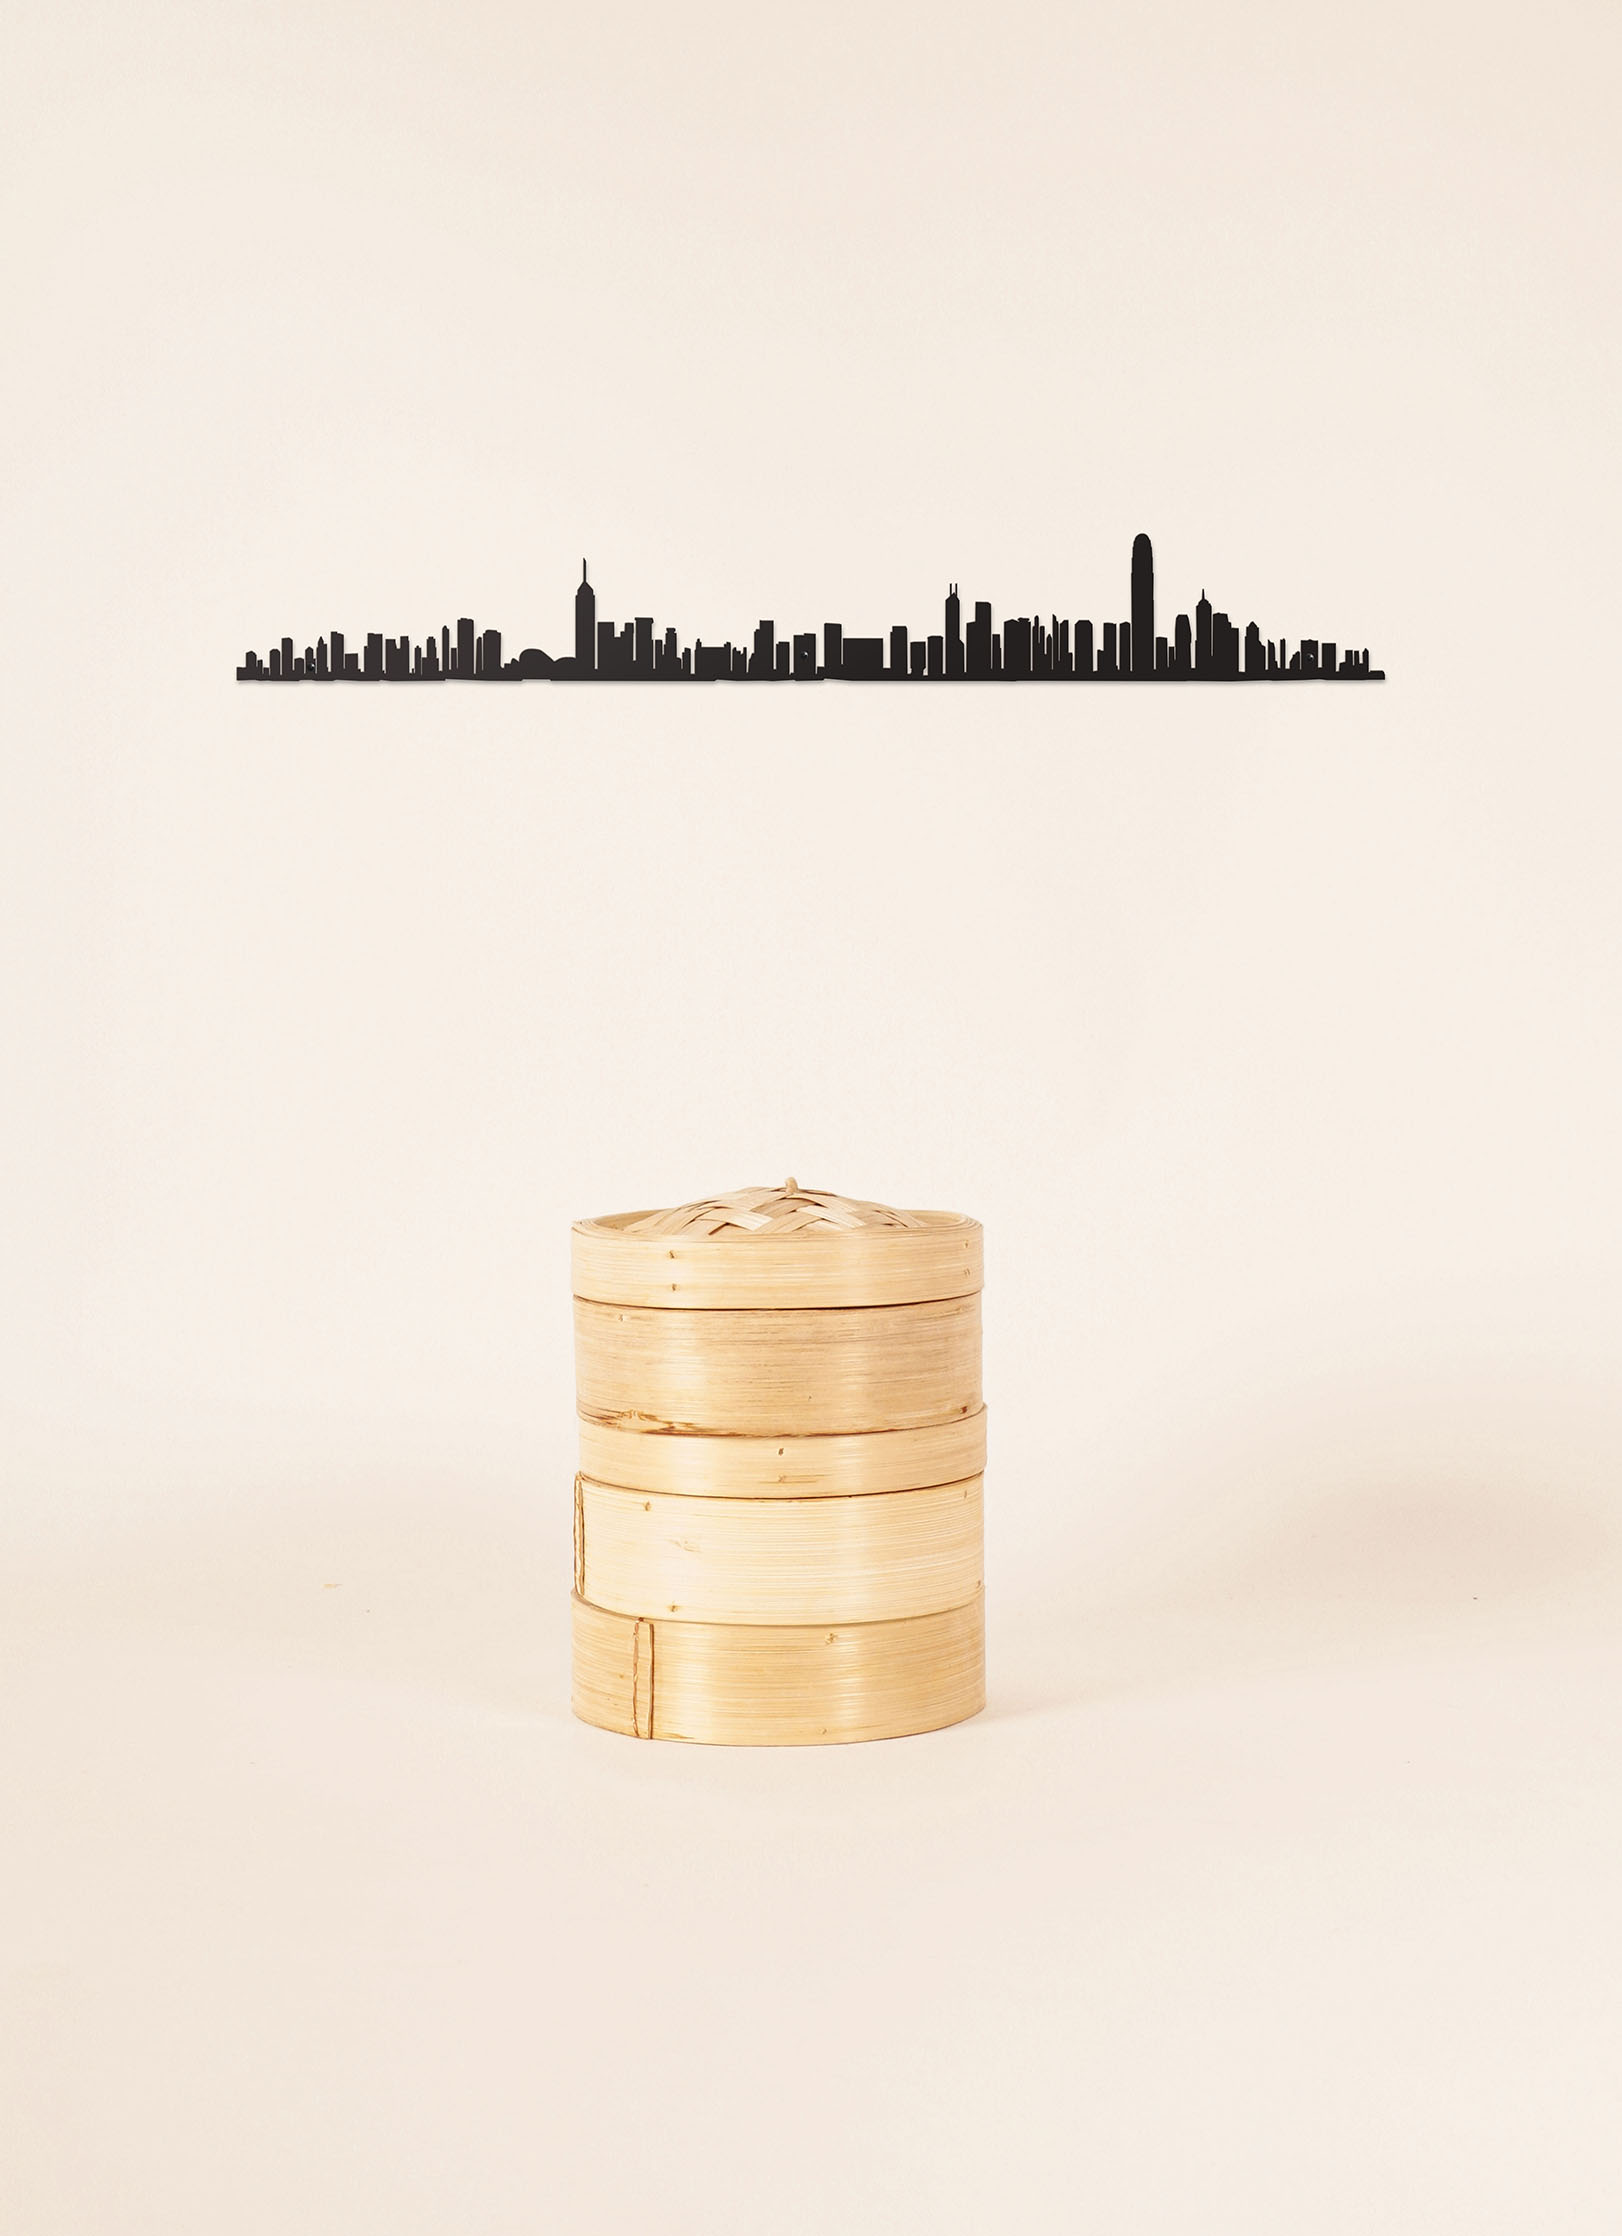 Cliché skyline de Hong-Kong